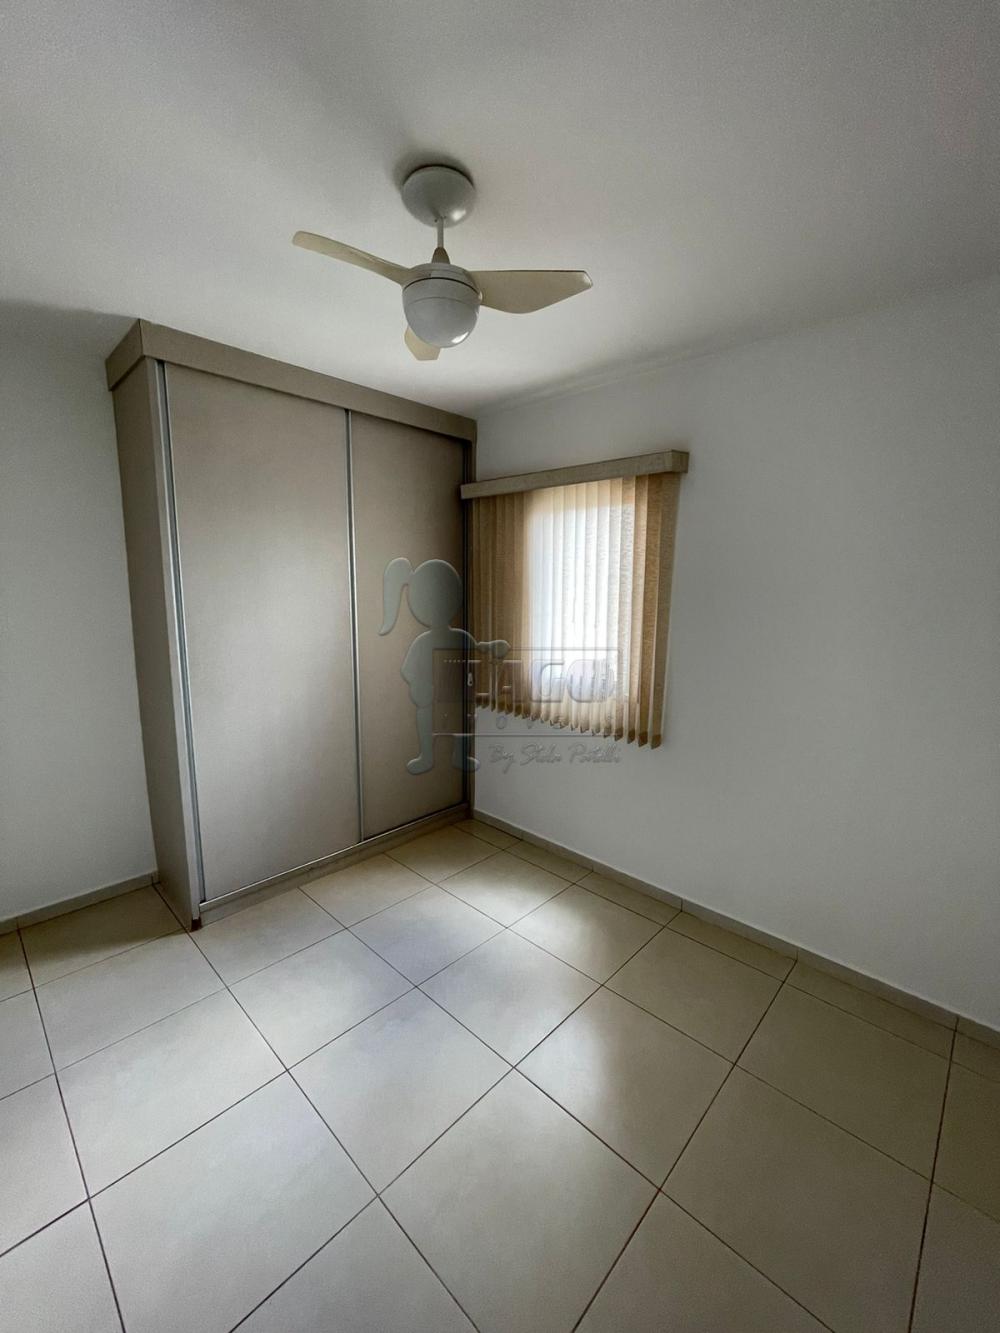 Alugar Apartamentos / Padrão em Ribeirão Preto R$ 1.450,00 - Foto 9